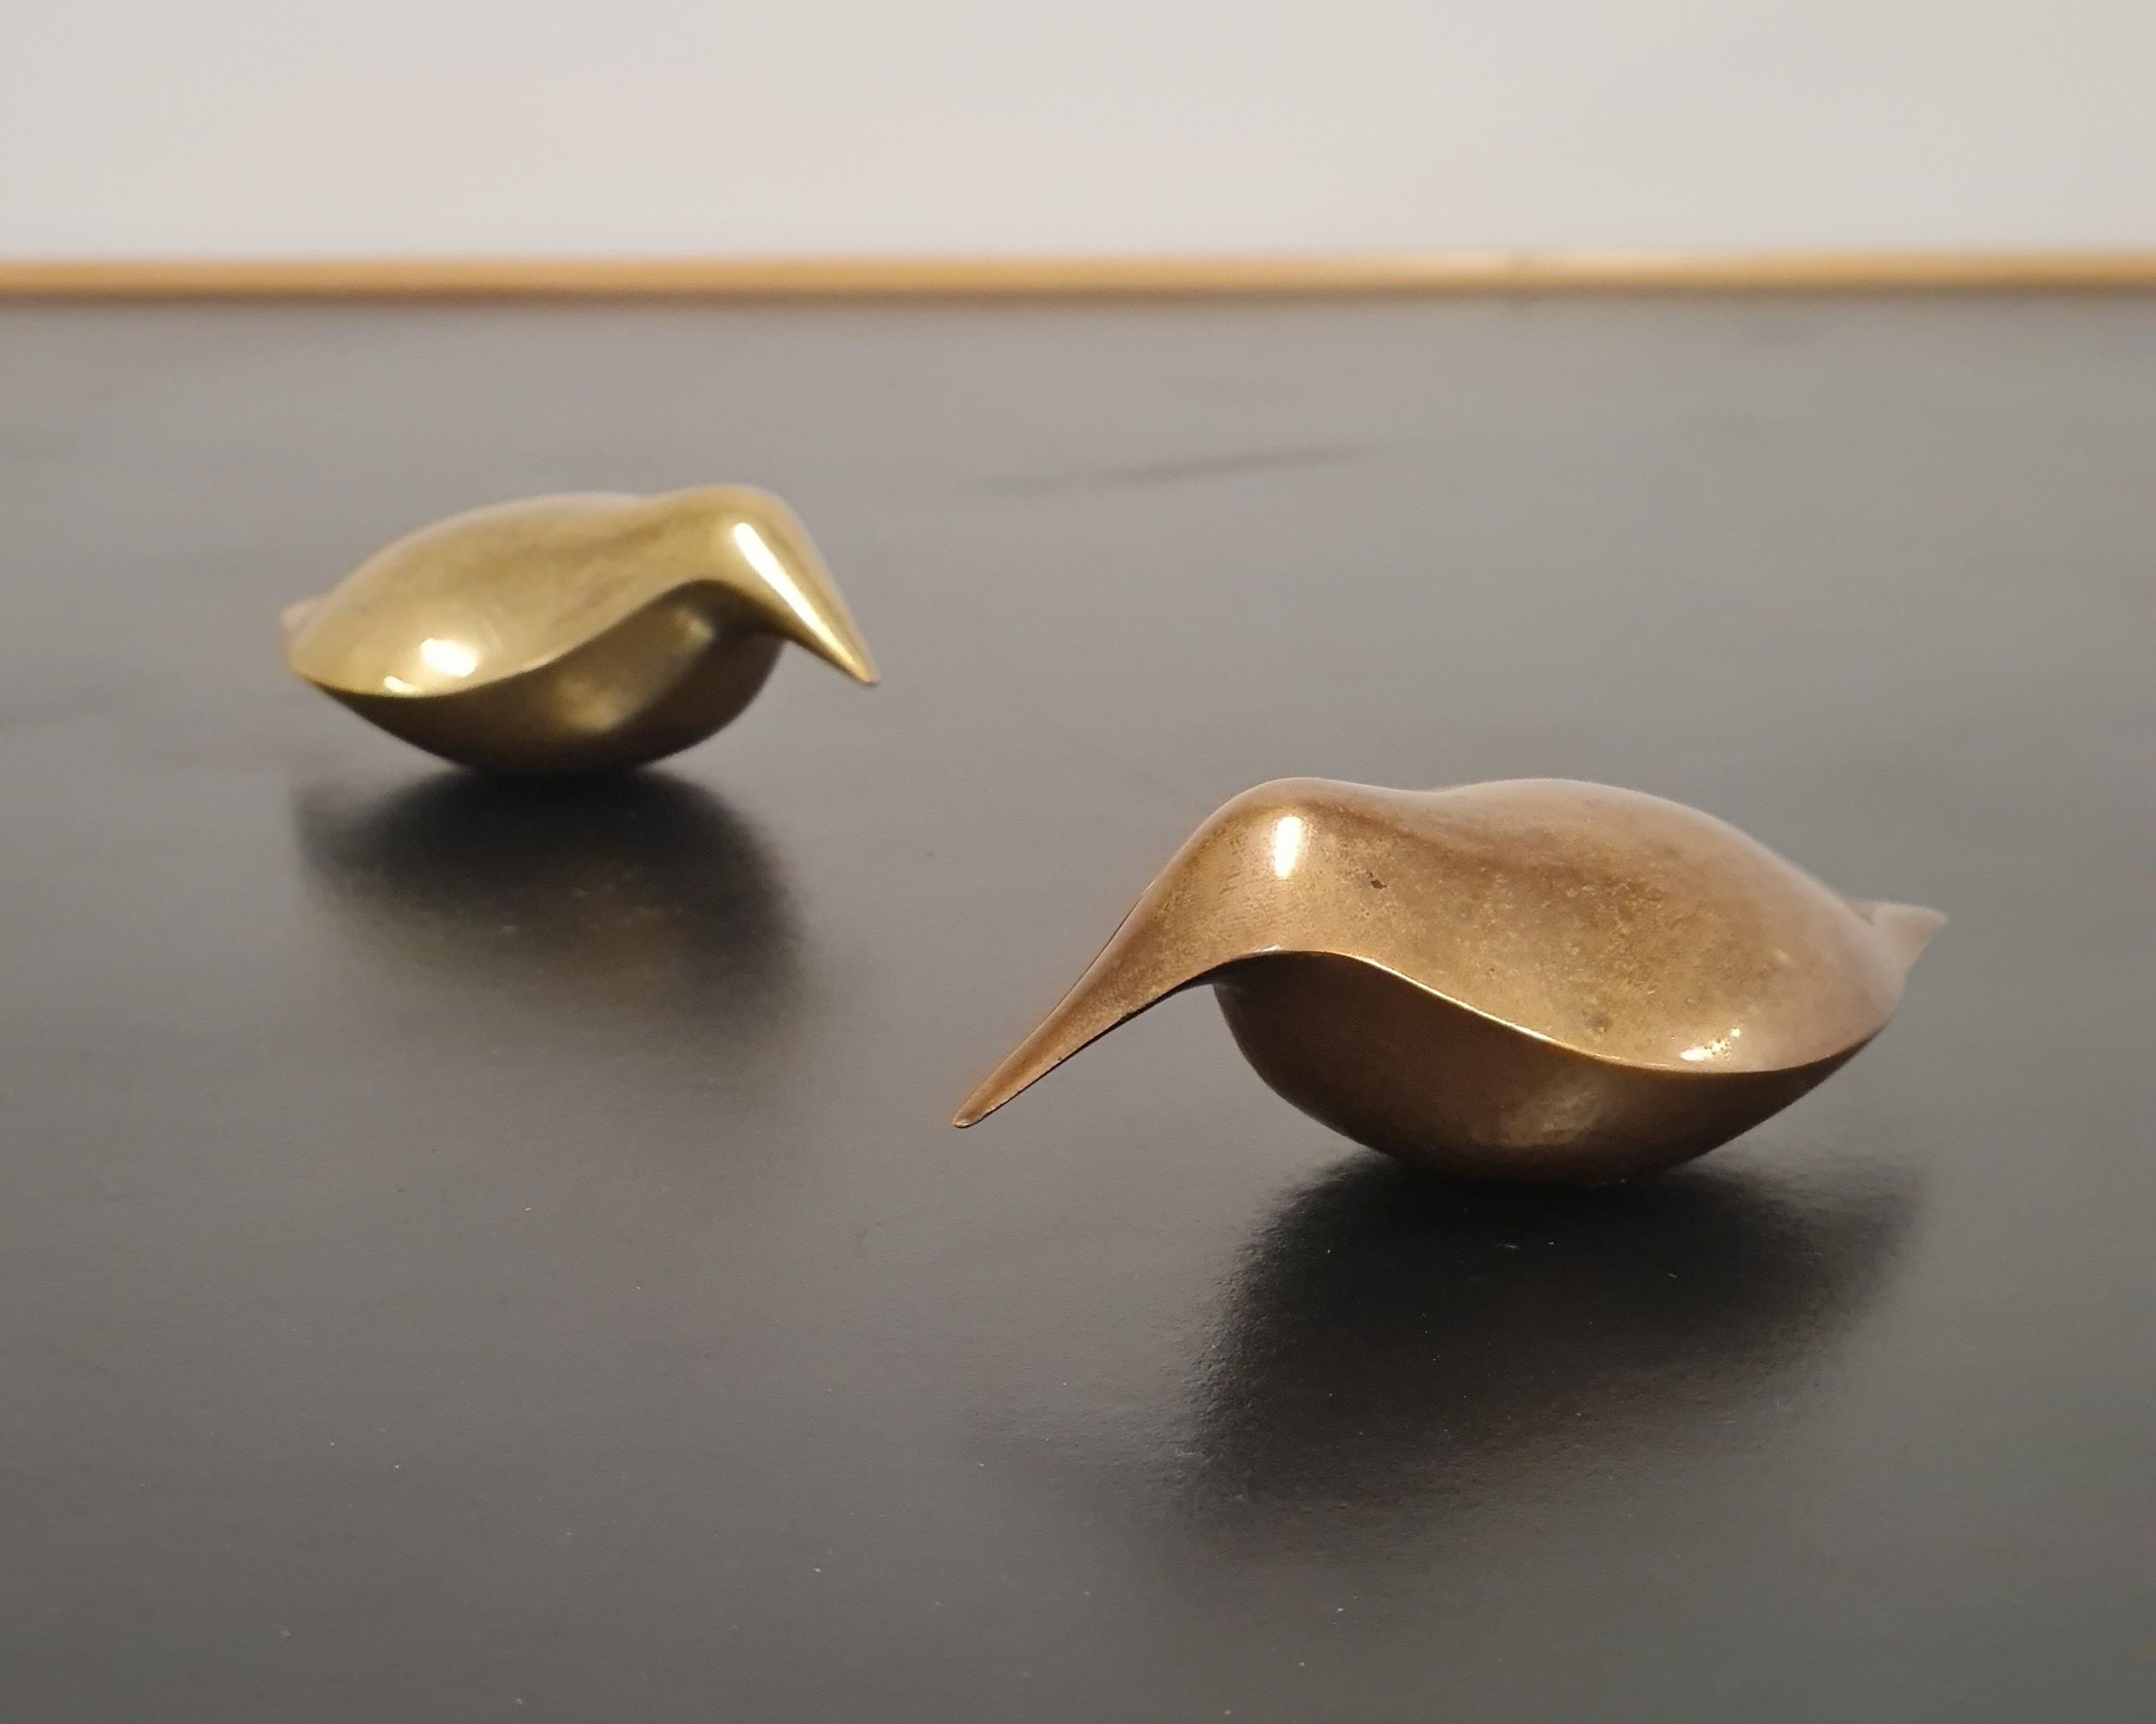 Ein paar schöne Tapio Wirkkala Bronze Vogel Briefbeschwerer.  Beide Gegenstände sind in schönem Originalzustand mit schöner Vintage-Patina.  Obwohl sie ursprünglich als Briefbeschwerer gedacht waren, können diese Gegenstände als eigenständige